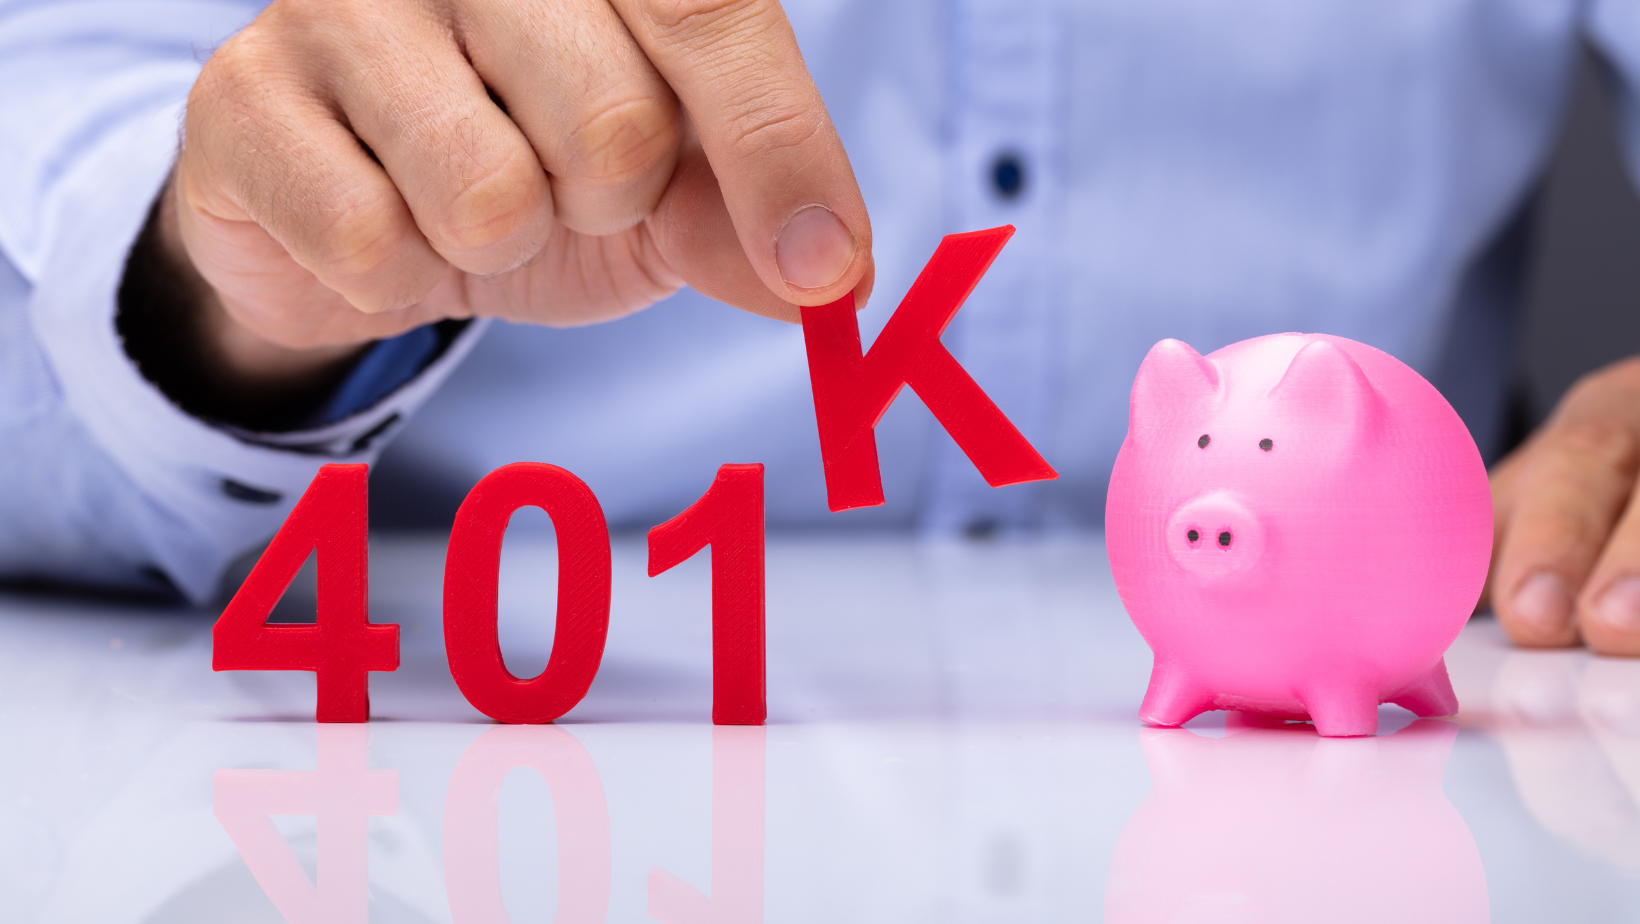 Benefits of 401(k)s